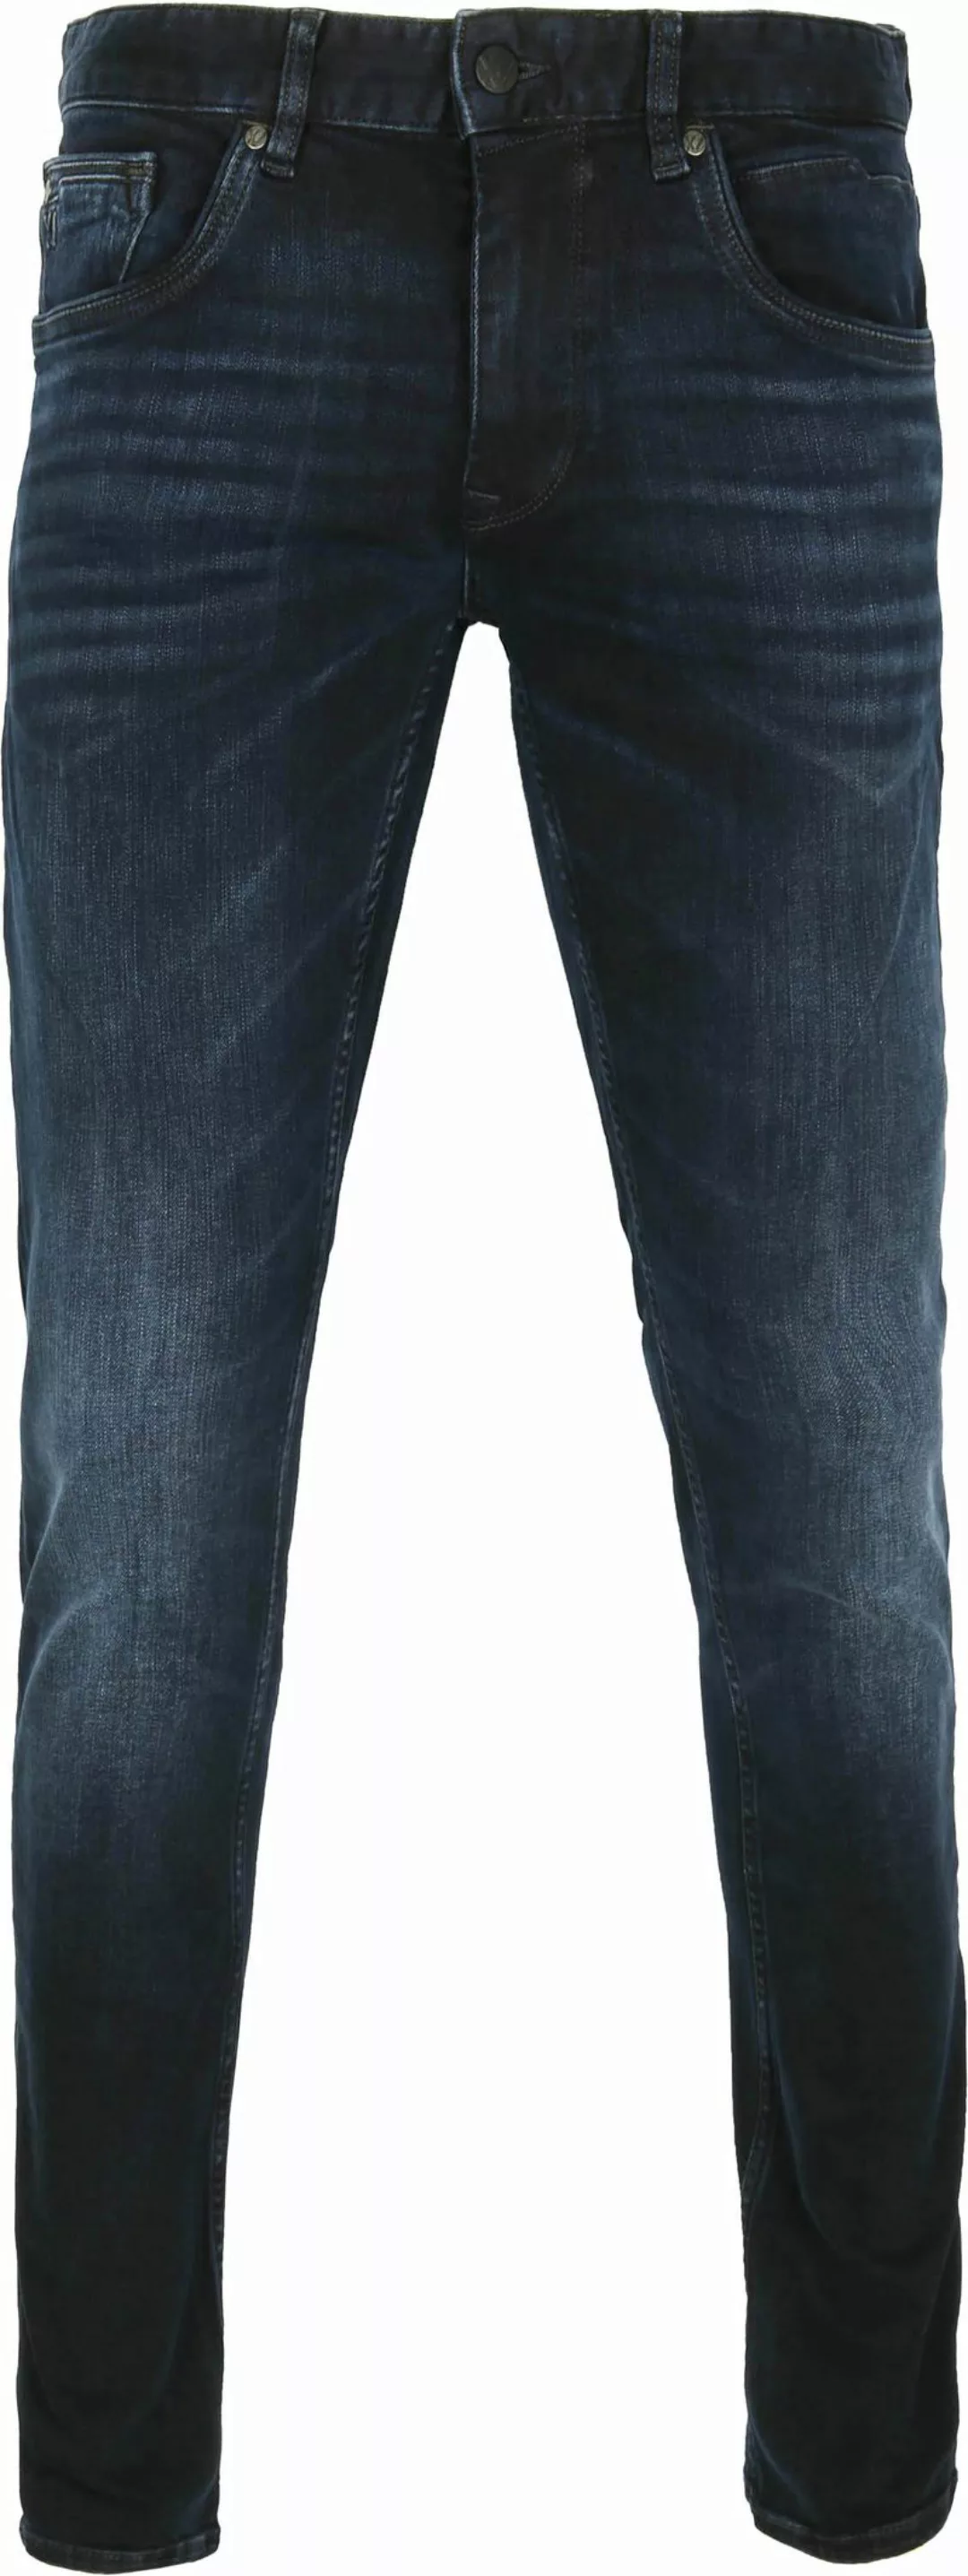 PME Legend XV Jeans Blue Black PTR150 - Größe W 34 - L 30 günstig online kaufen